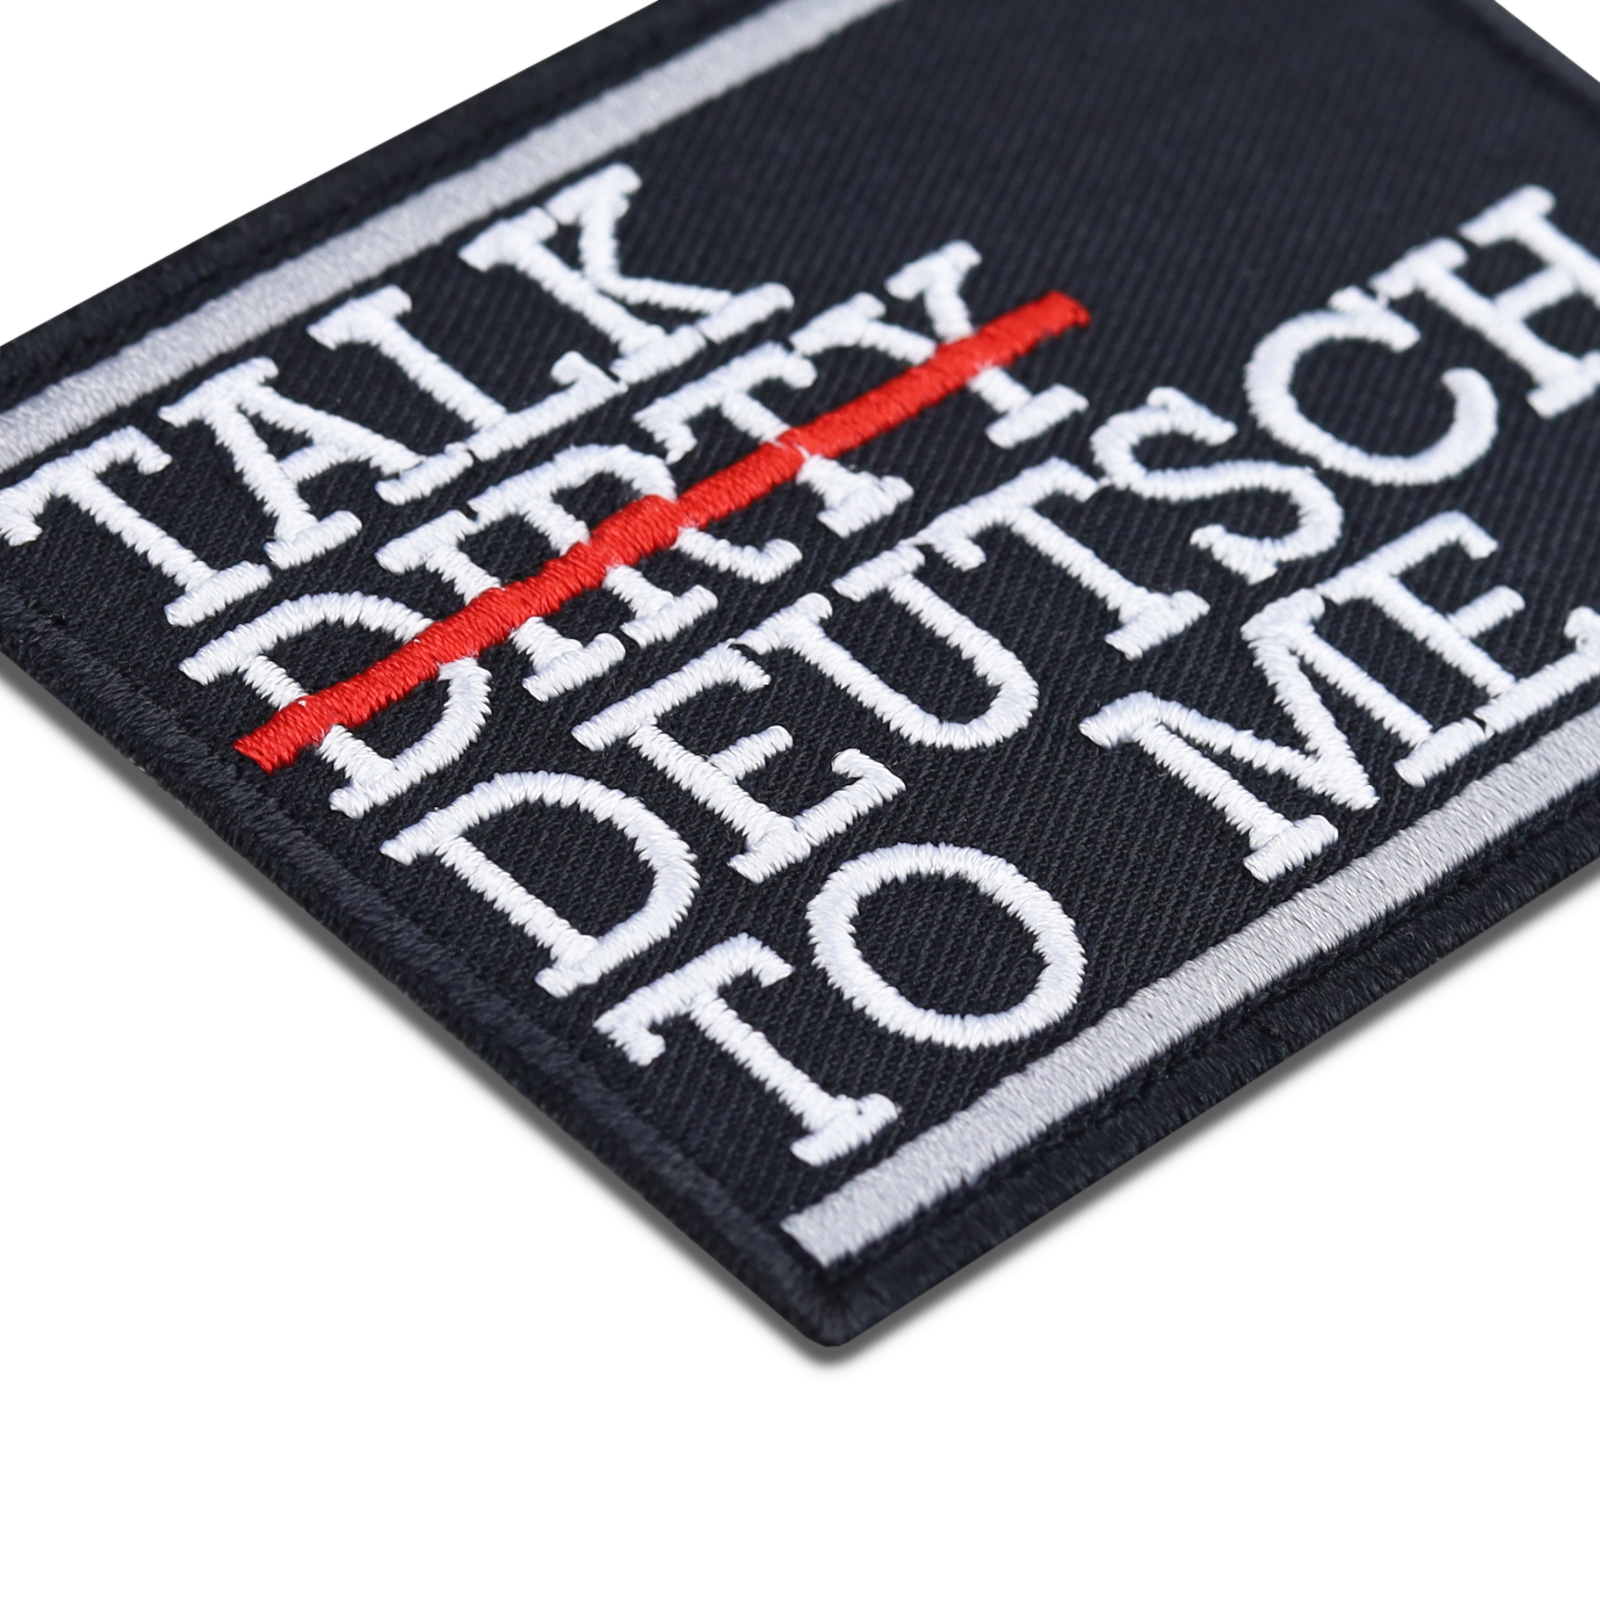 Talk deutsch to me - Patch